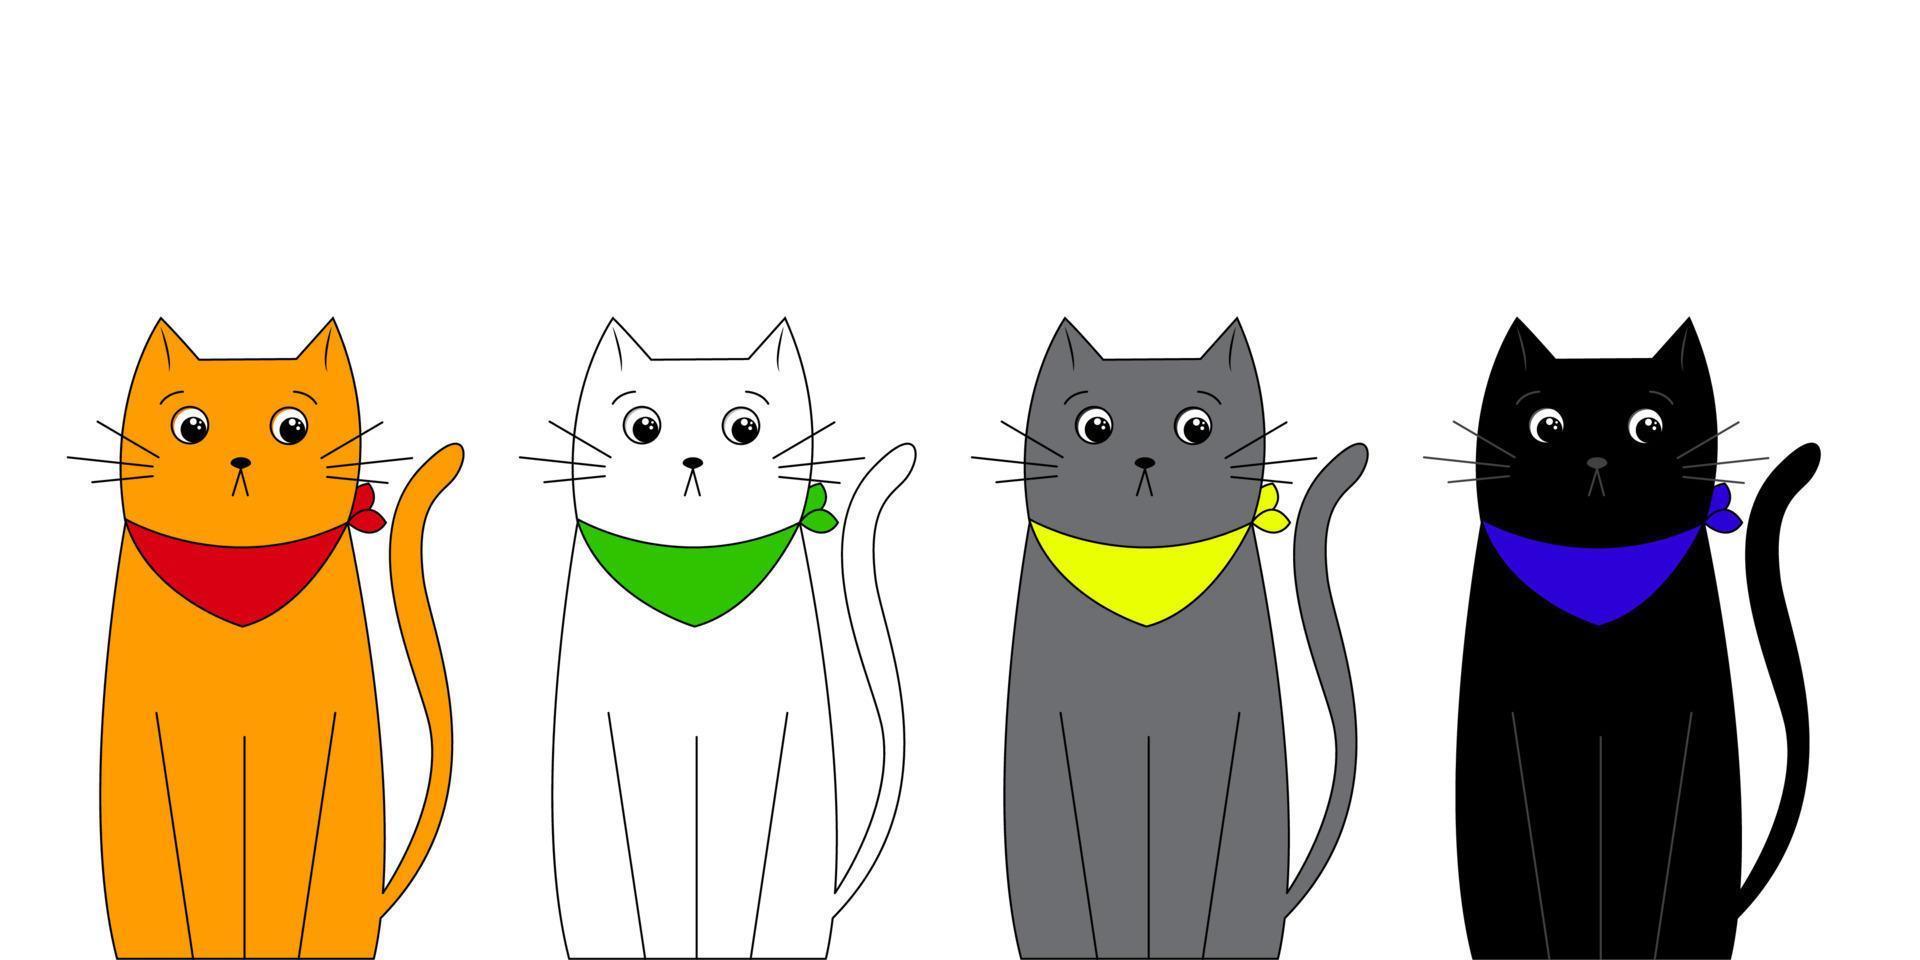 personnages de dessins animés mignons chats tristes de différentes couleurs et races en foulards. illustration vectorielle isolée sur fond blanc vecteur